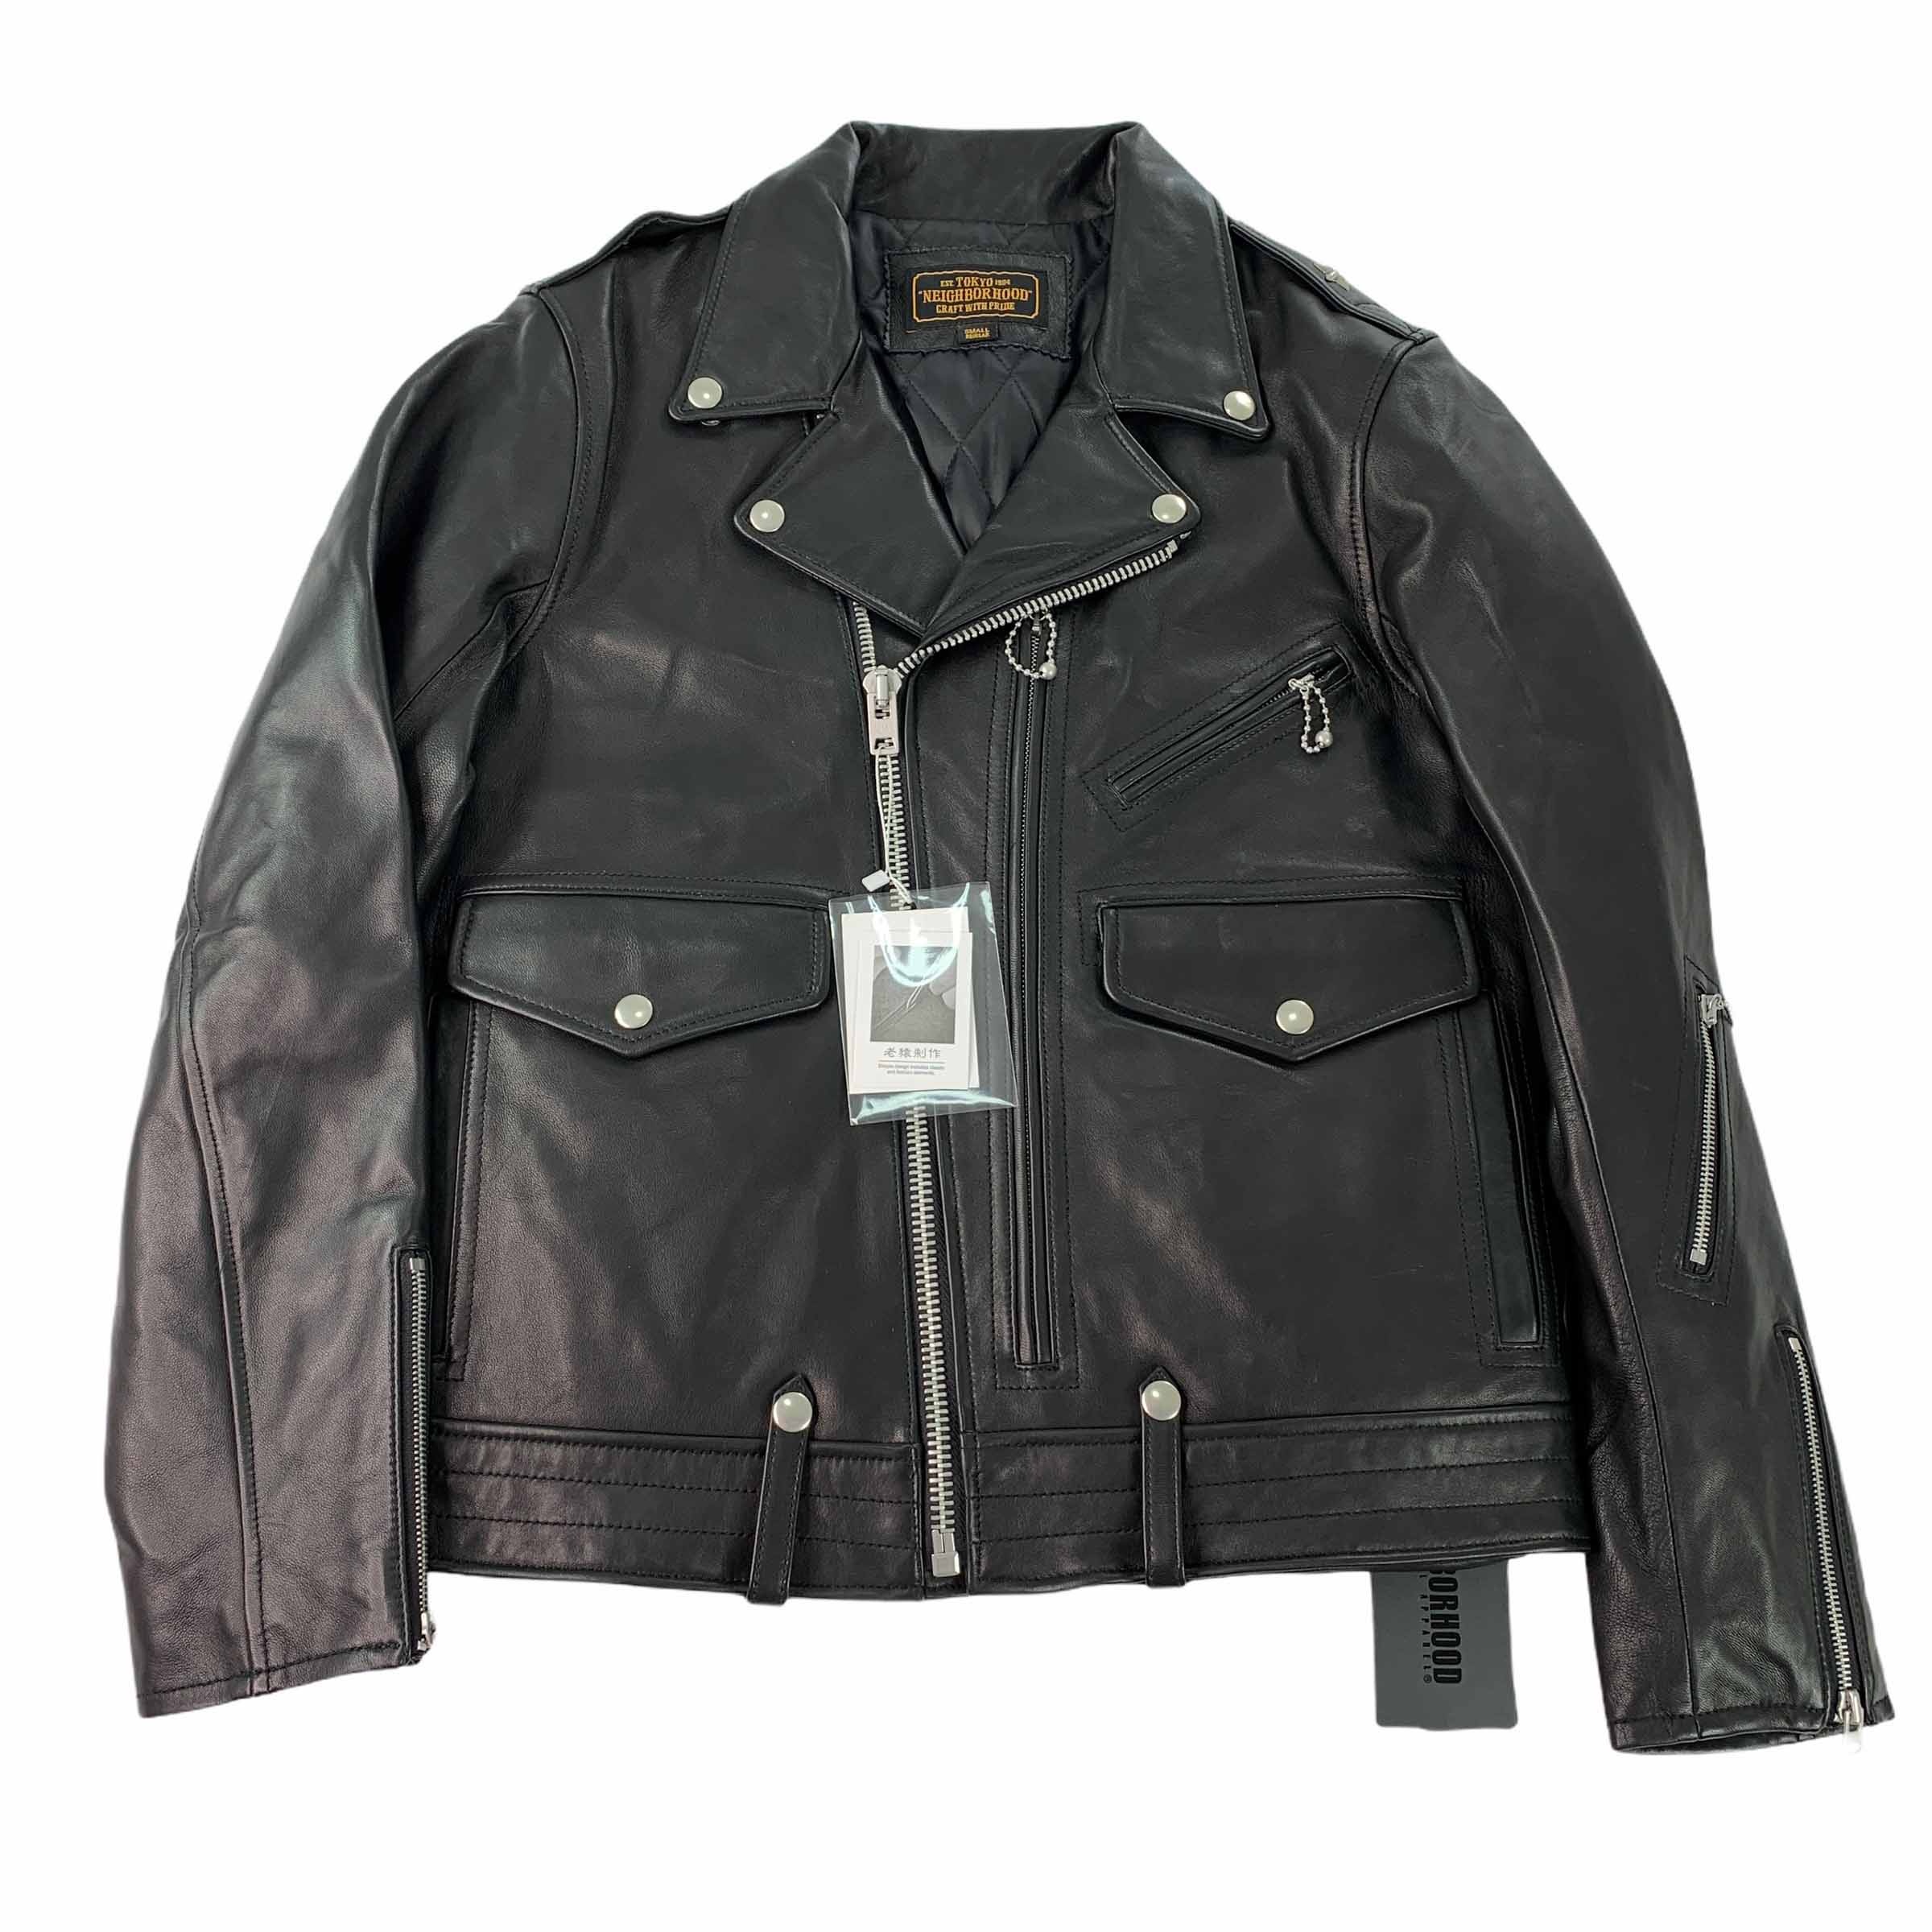 [Neighborhood] Rider Leather Jacket BK - Size S